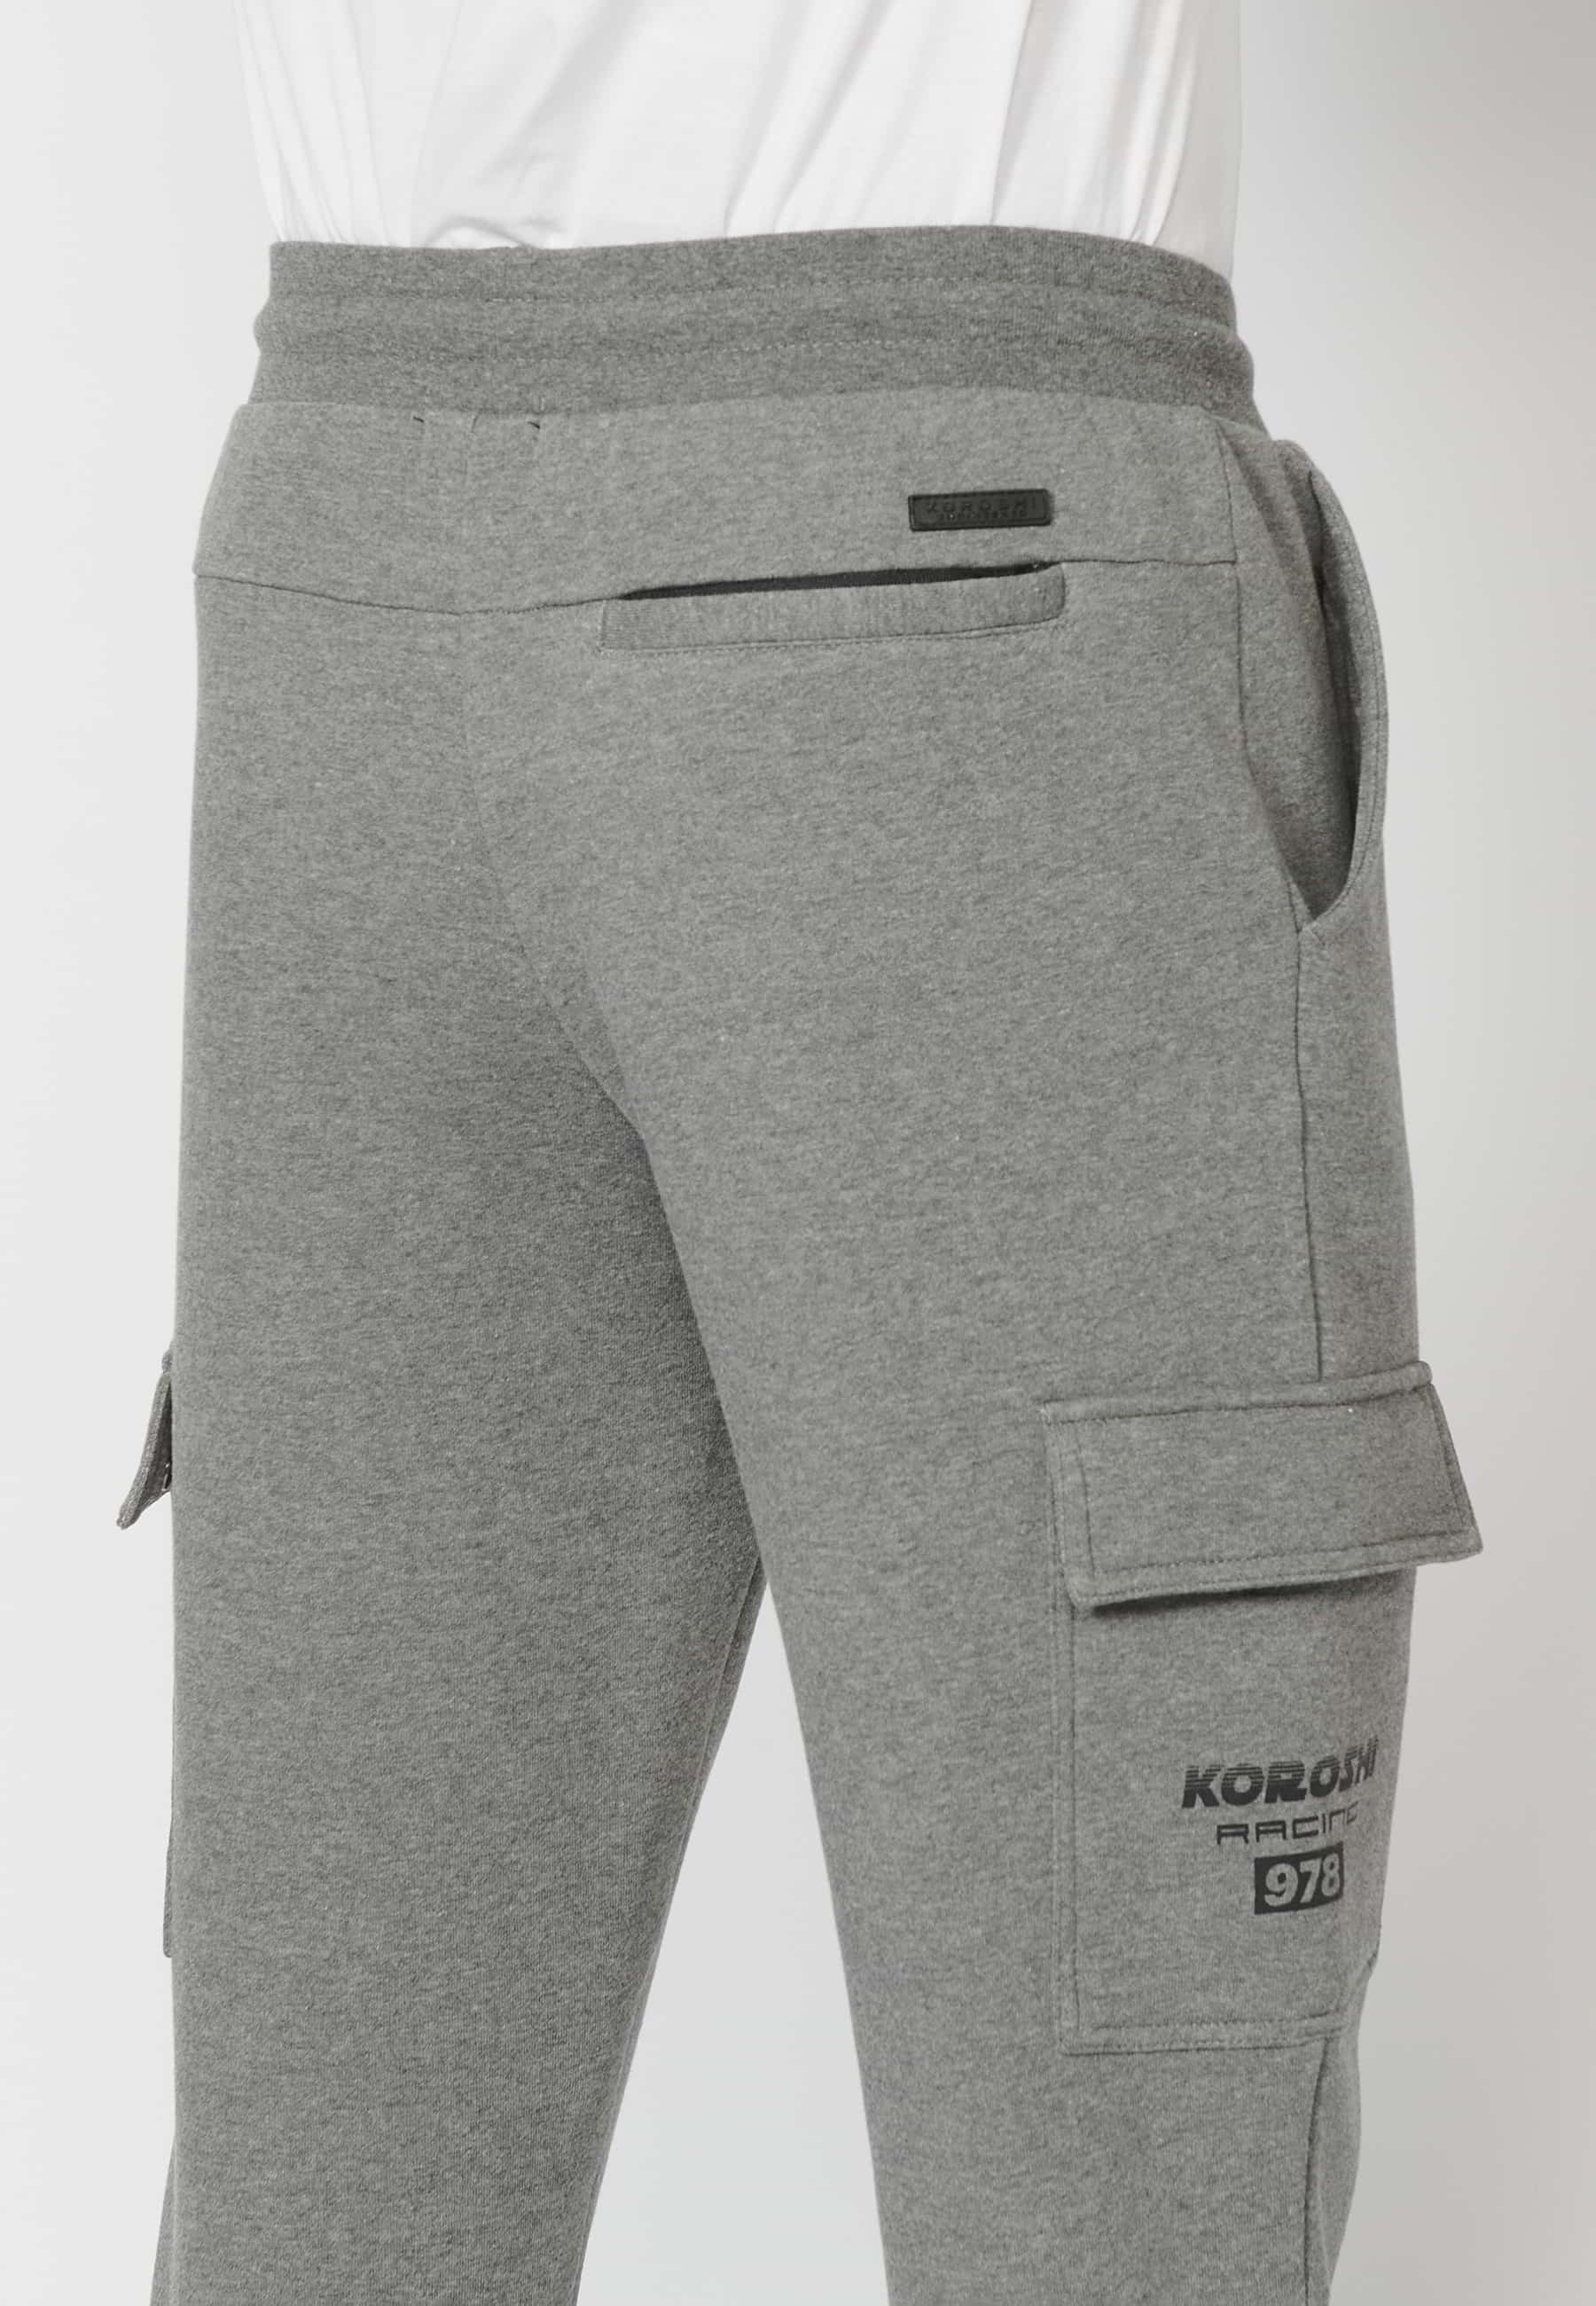 Pantalón Deportivo largo jogger con cintura elástica ajustable, bolsillo cargo, color Gris para Hombre